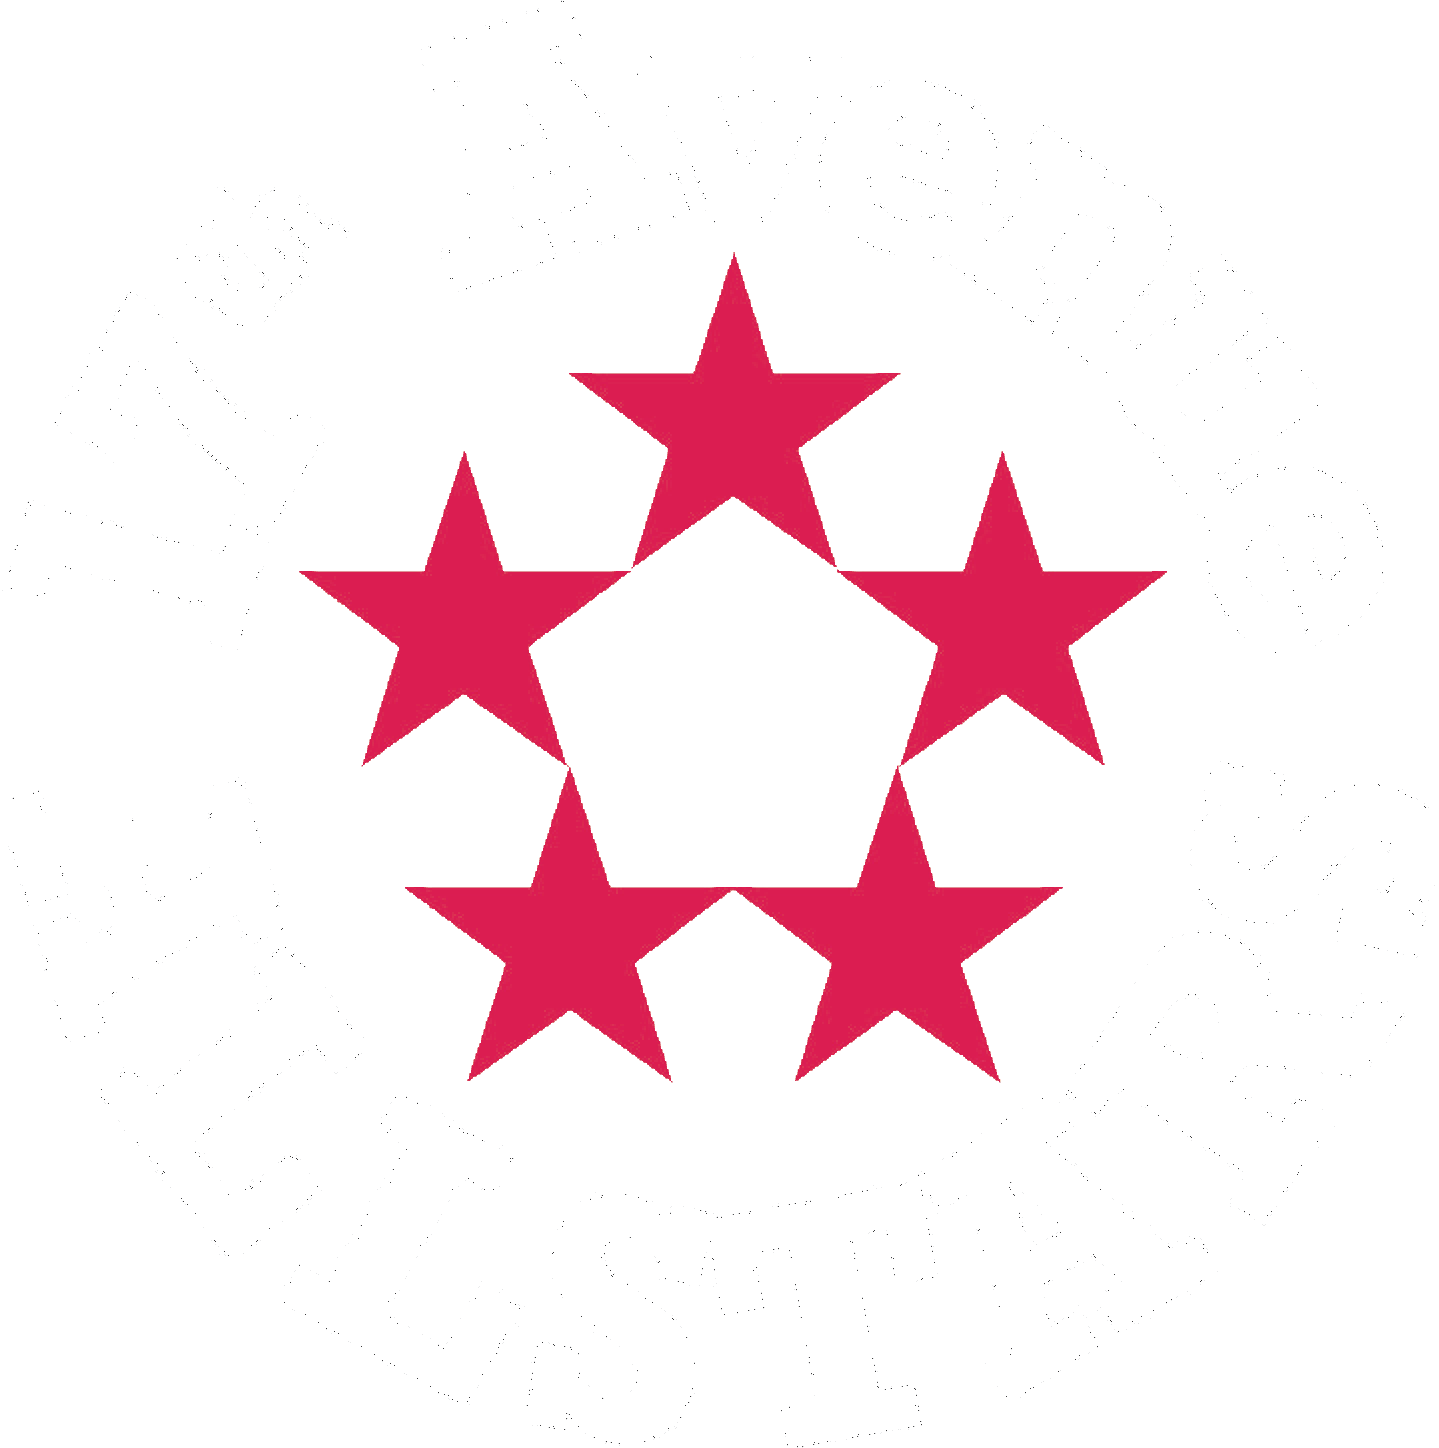 17th Avenue Allstars